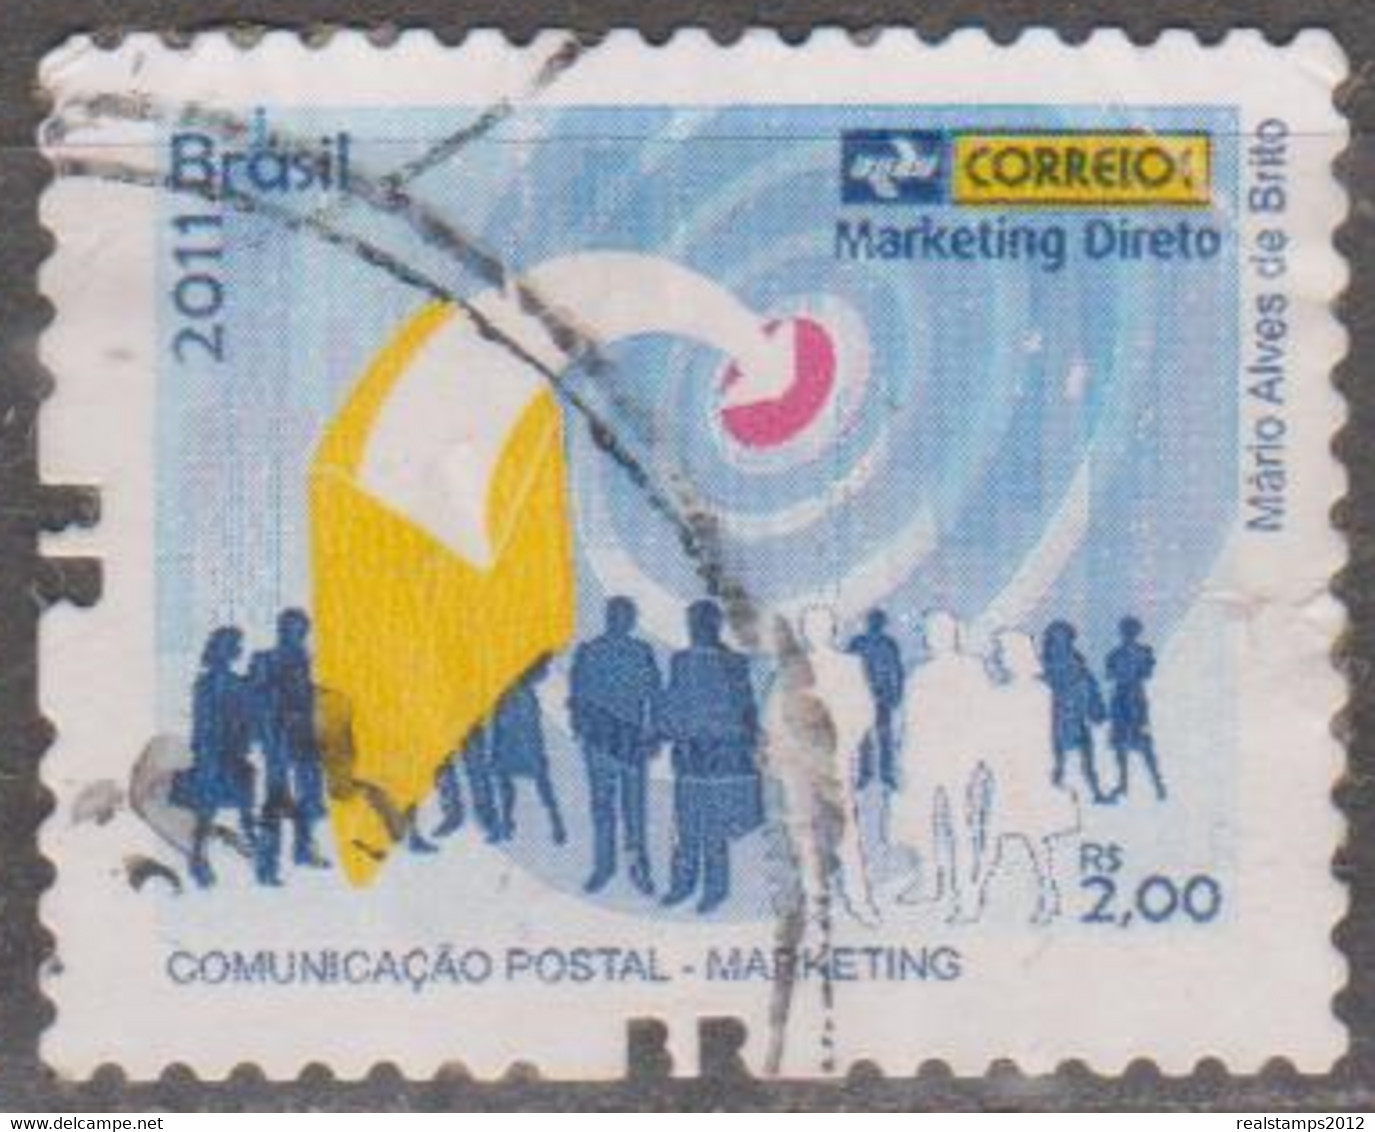 Brasil - 2011 - Comunicação Postal - Marketing   - Marketing Direto  R$ 2,00 (o)  RHM Nº - Oblitérés